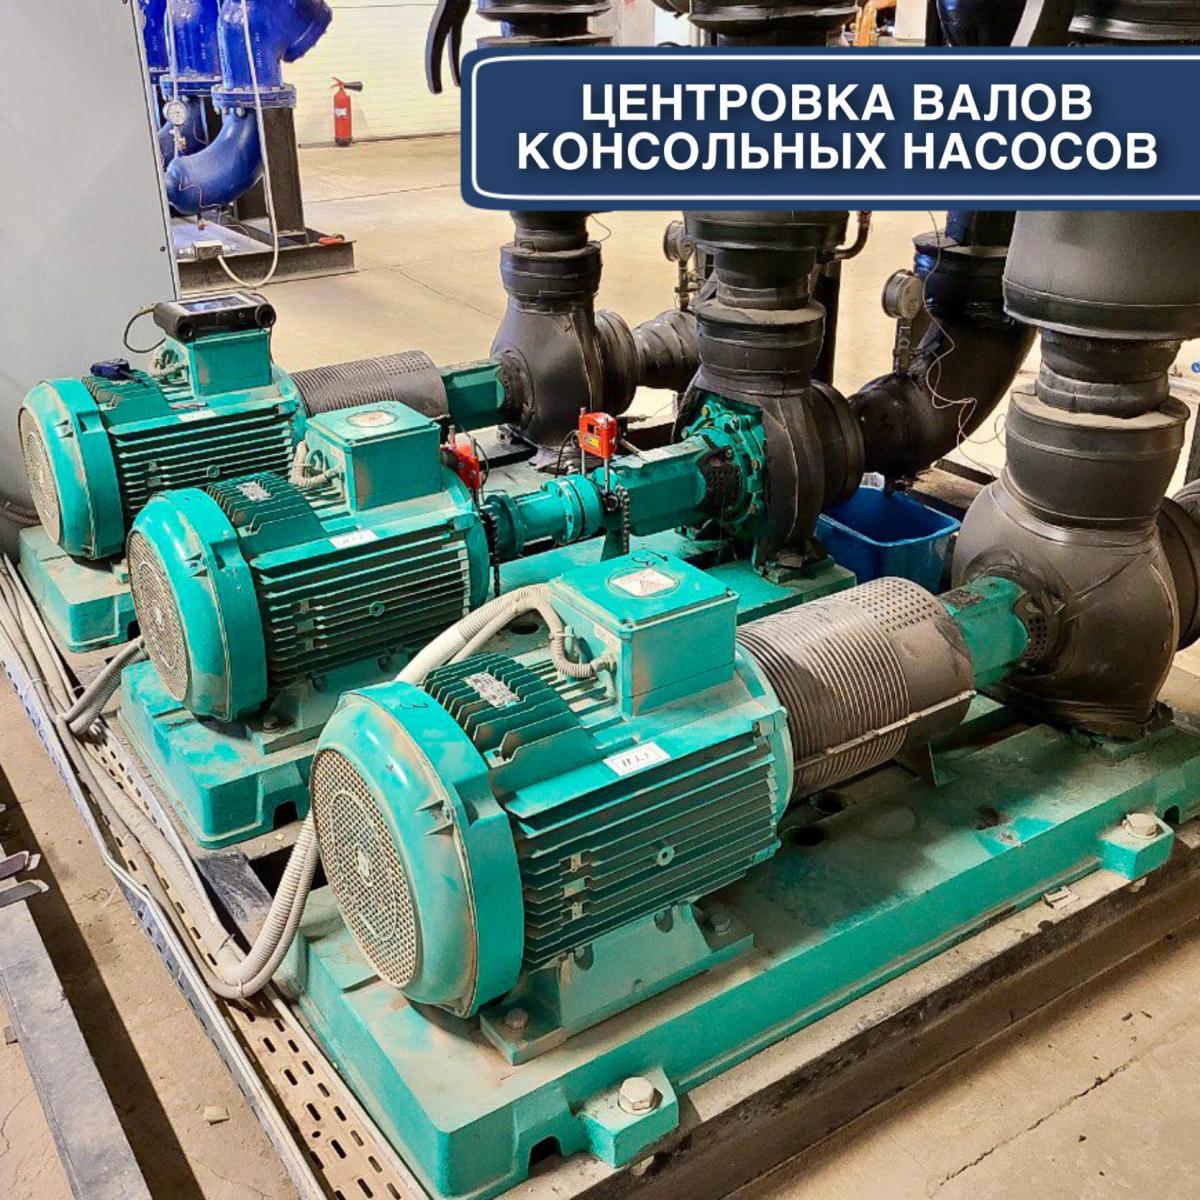 Центрування валів консольних насосів в Одесі: Grundfos, Wilo, DAB, KSB